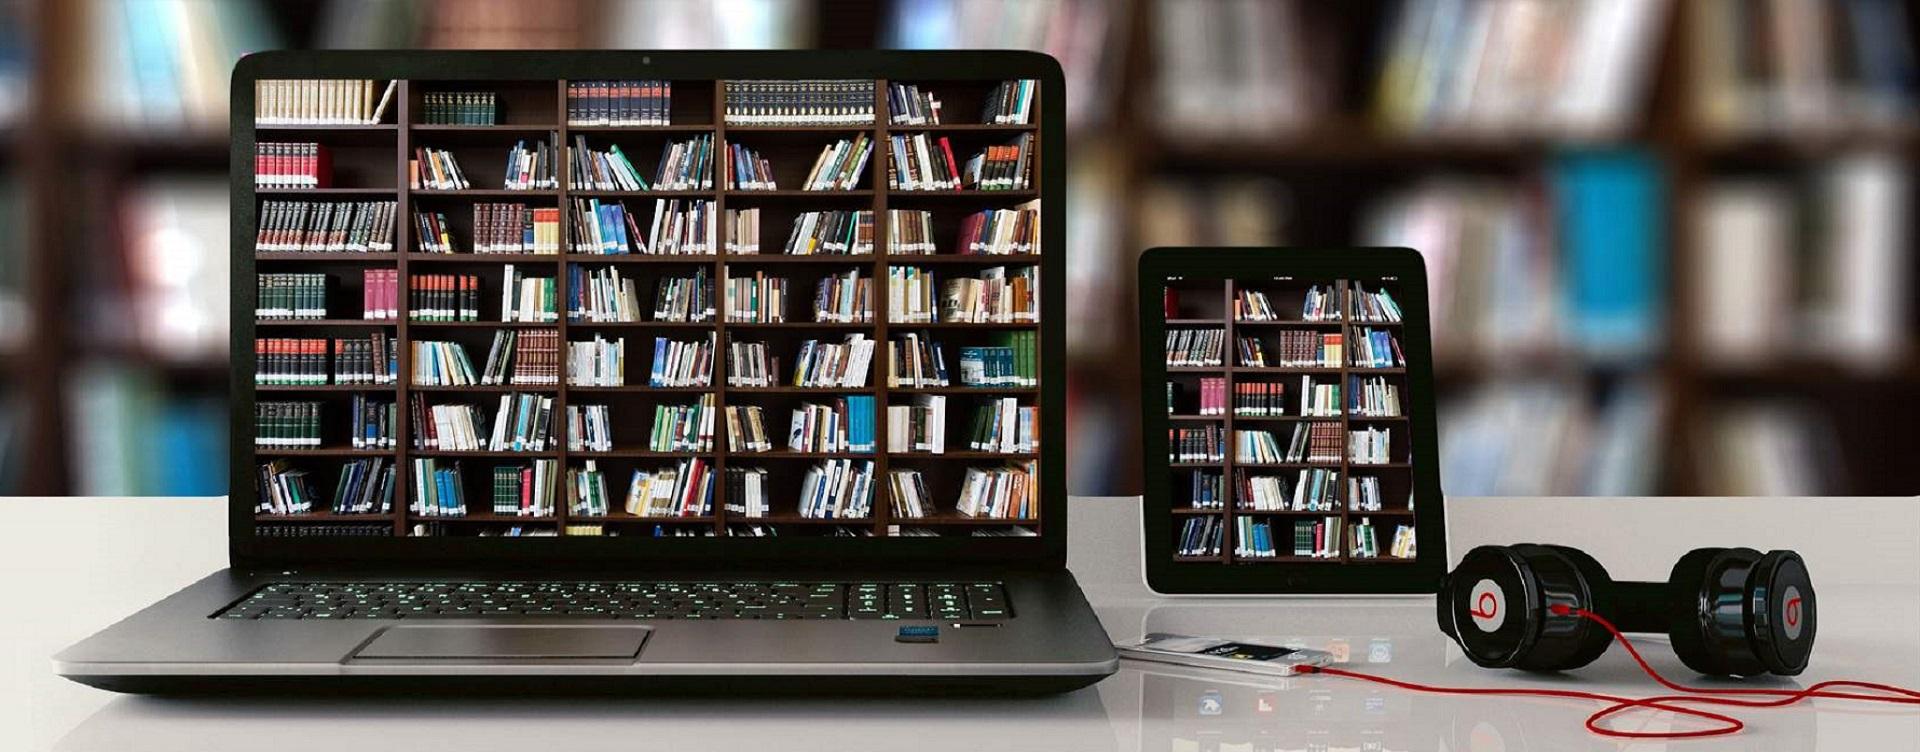 Ordenador y tablet que muestran una biblioteca repleta de libros